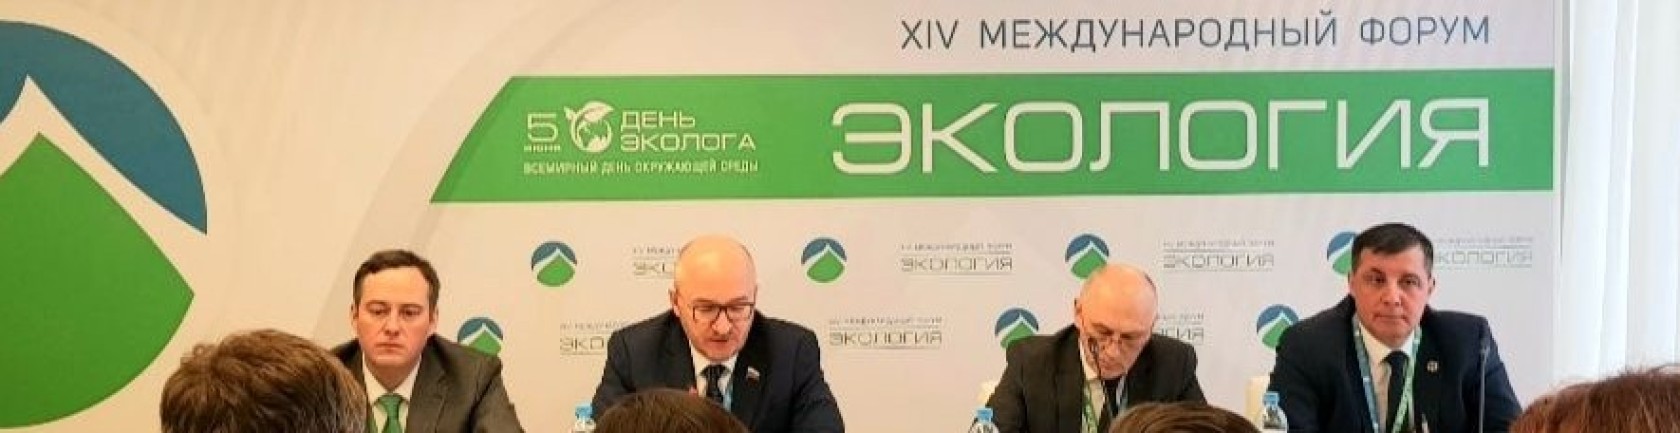 Павел Гудовский принимает участие в XIV международном форуме «Экология»